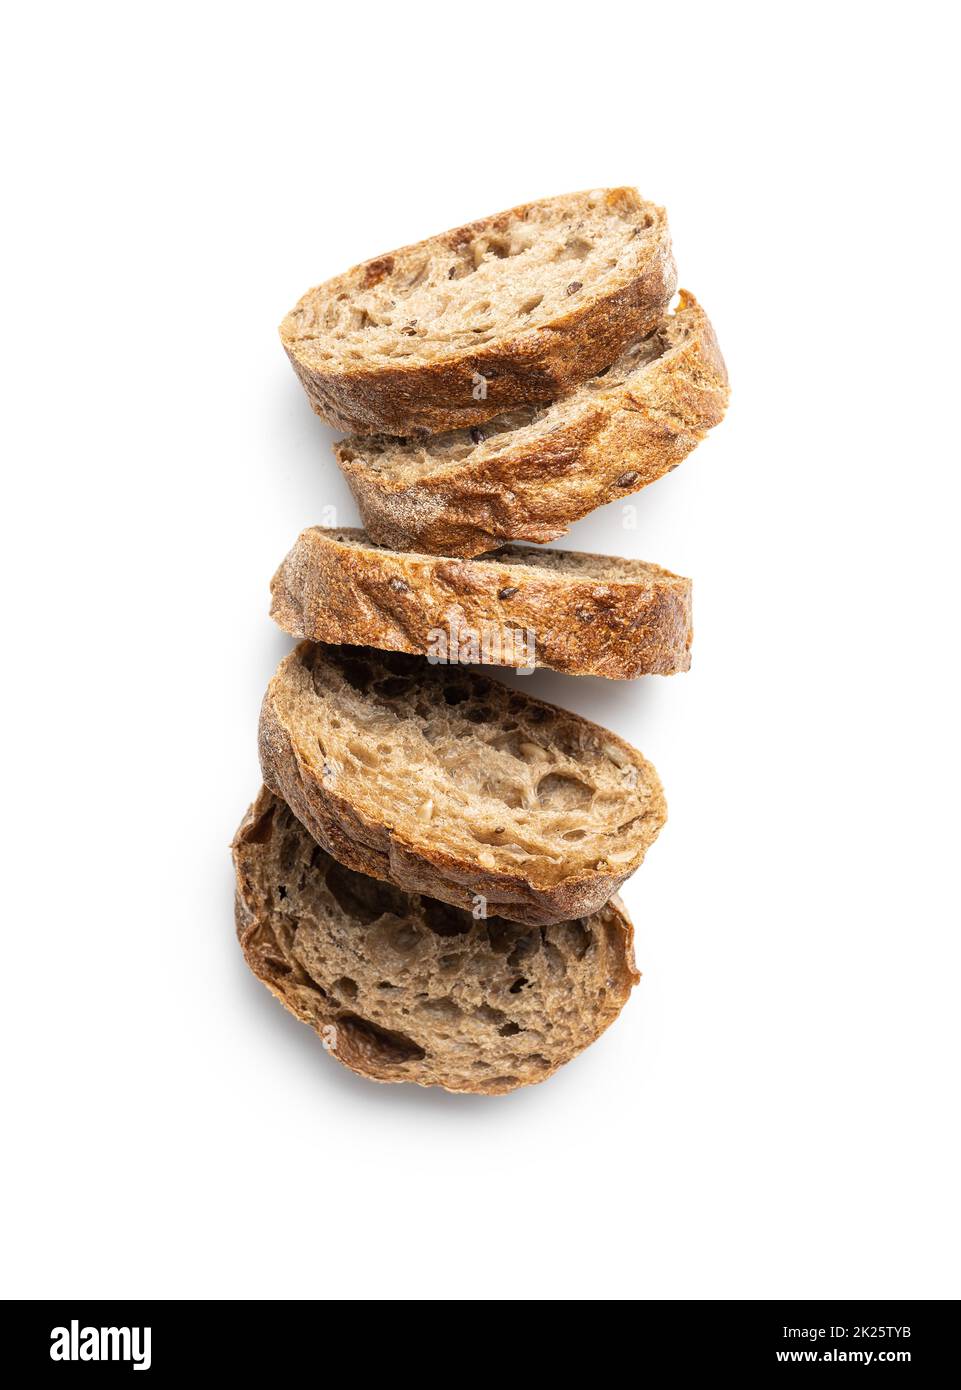 Wholegrain ciabatta bread. Sliced baked baguette. Stock Photo